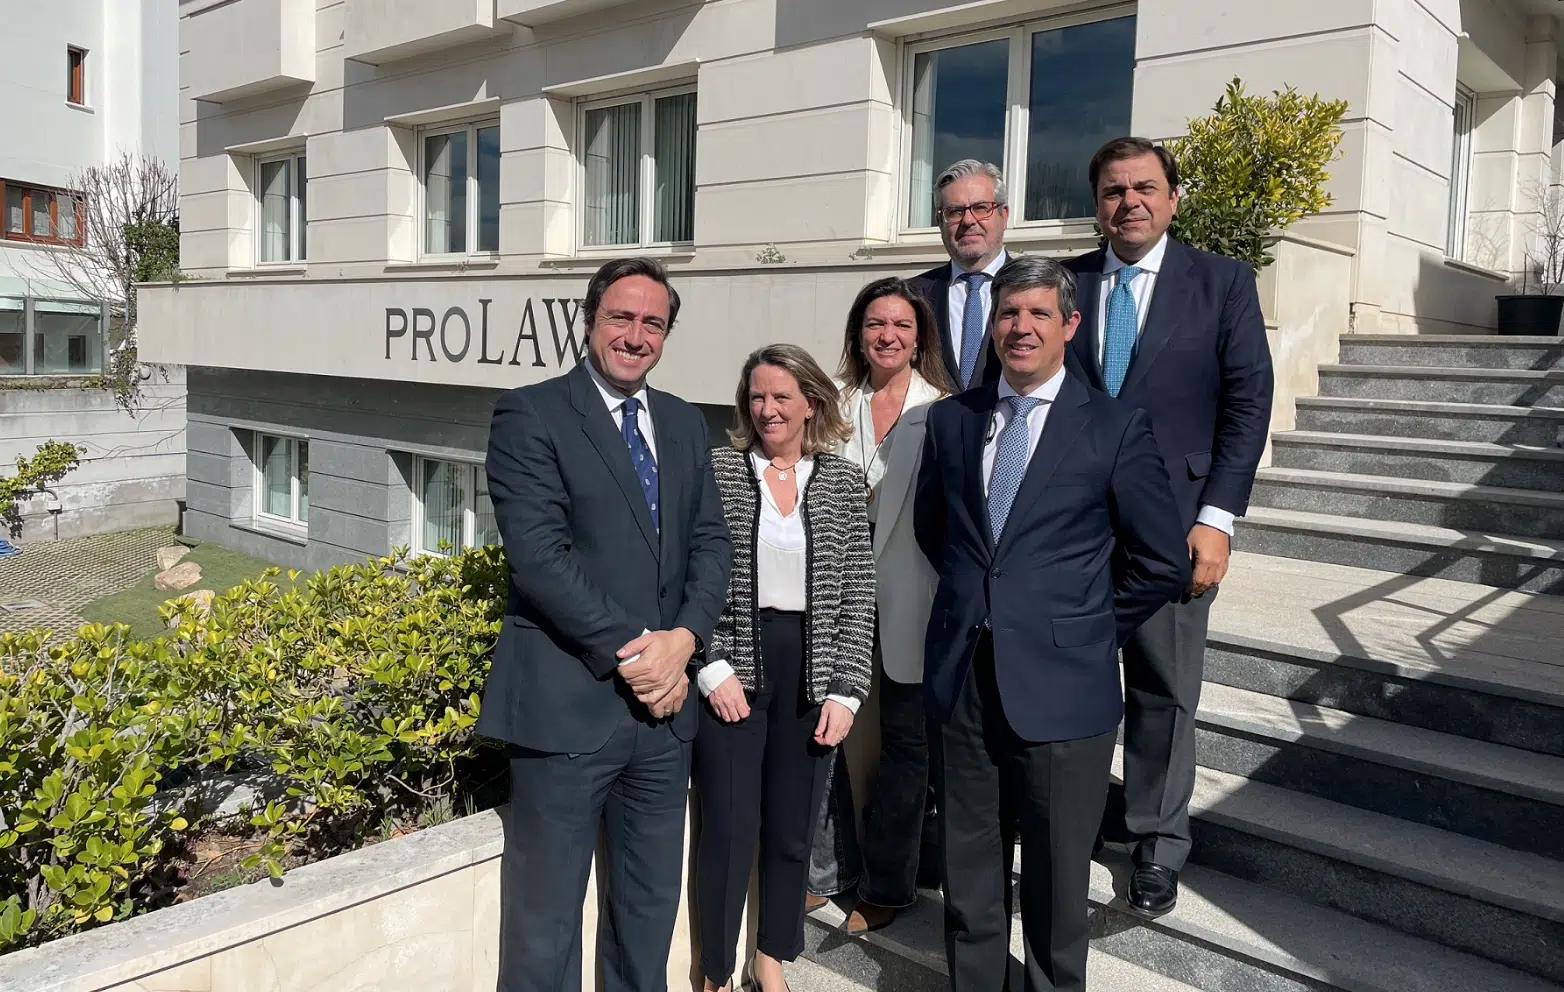 Prolaw e Iberia Abogados se fusionan y forman una firma multidisciplinar de más de 40 profesionales